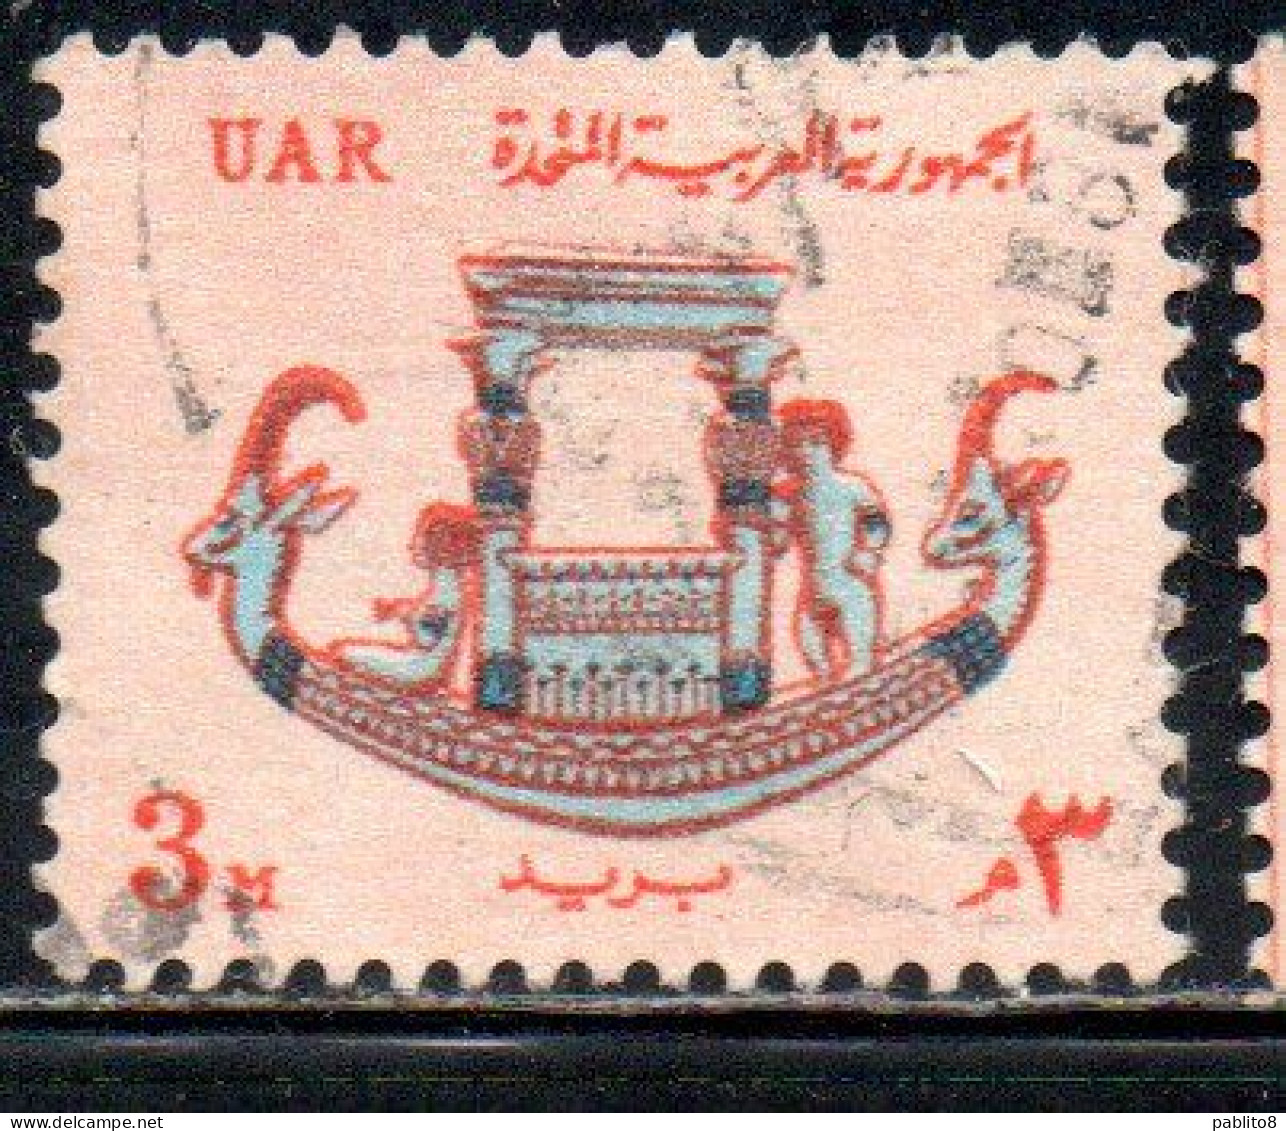 UAR EGYPT EGITTO 1964 1967 PHARAONIC CALCITE BOAT 3m USED USATO OBLITERE' - Usati